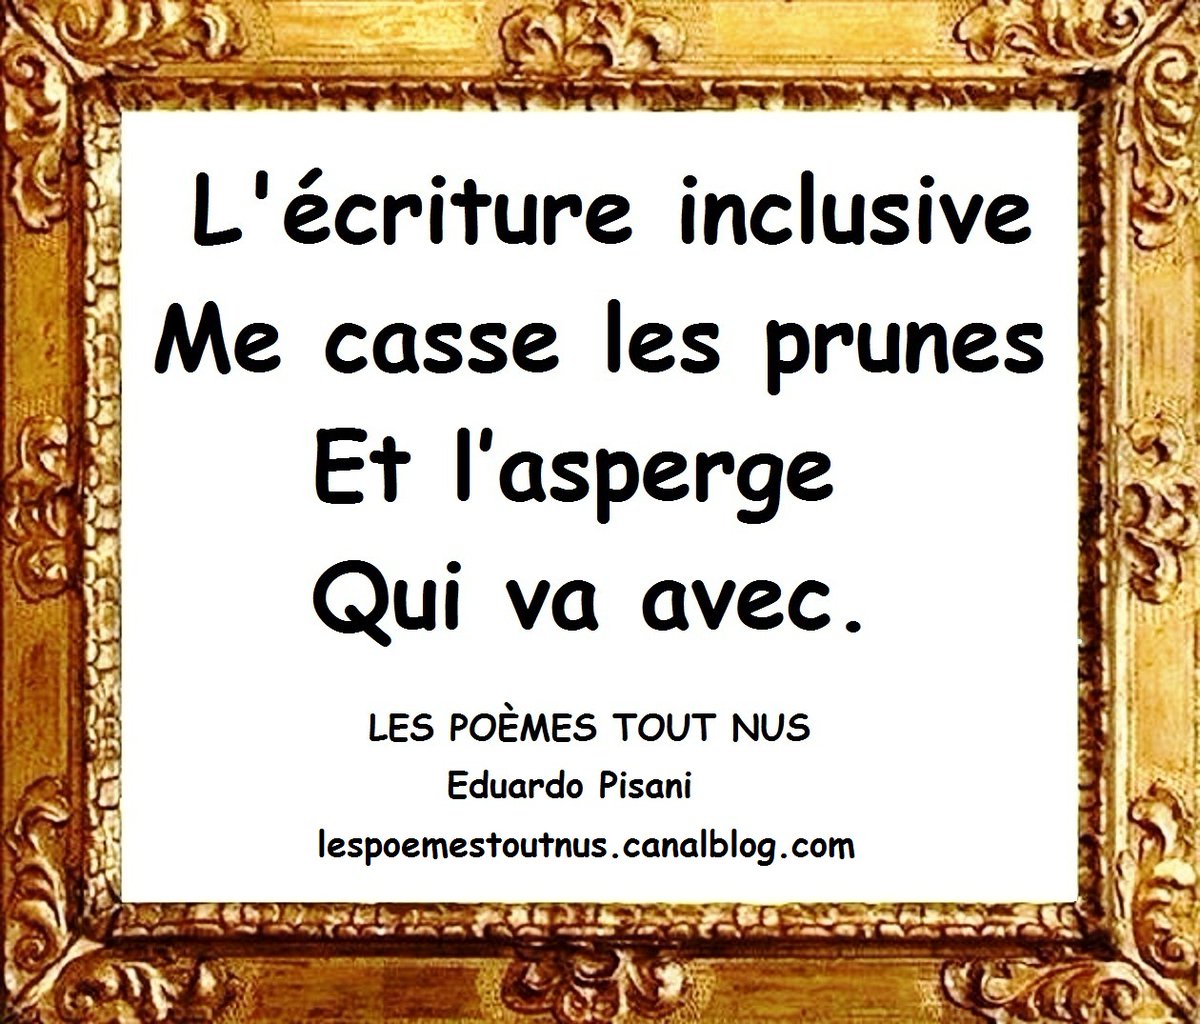 #LesPoèmesToutNus #EduardoPisani #Edouardo #JeTAimeLelundi #Poésie #Poèmes #Poètes #ecritureinclusive